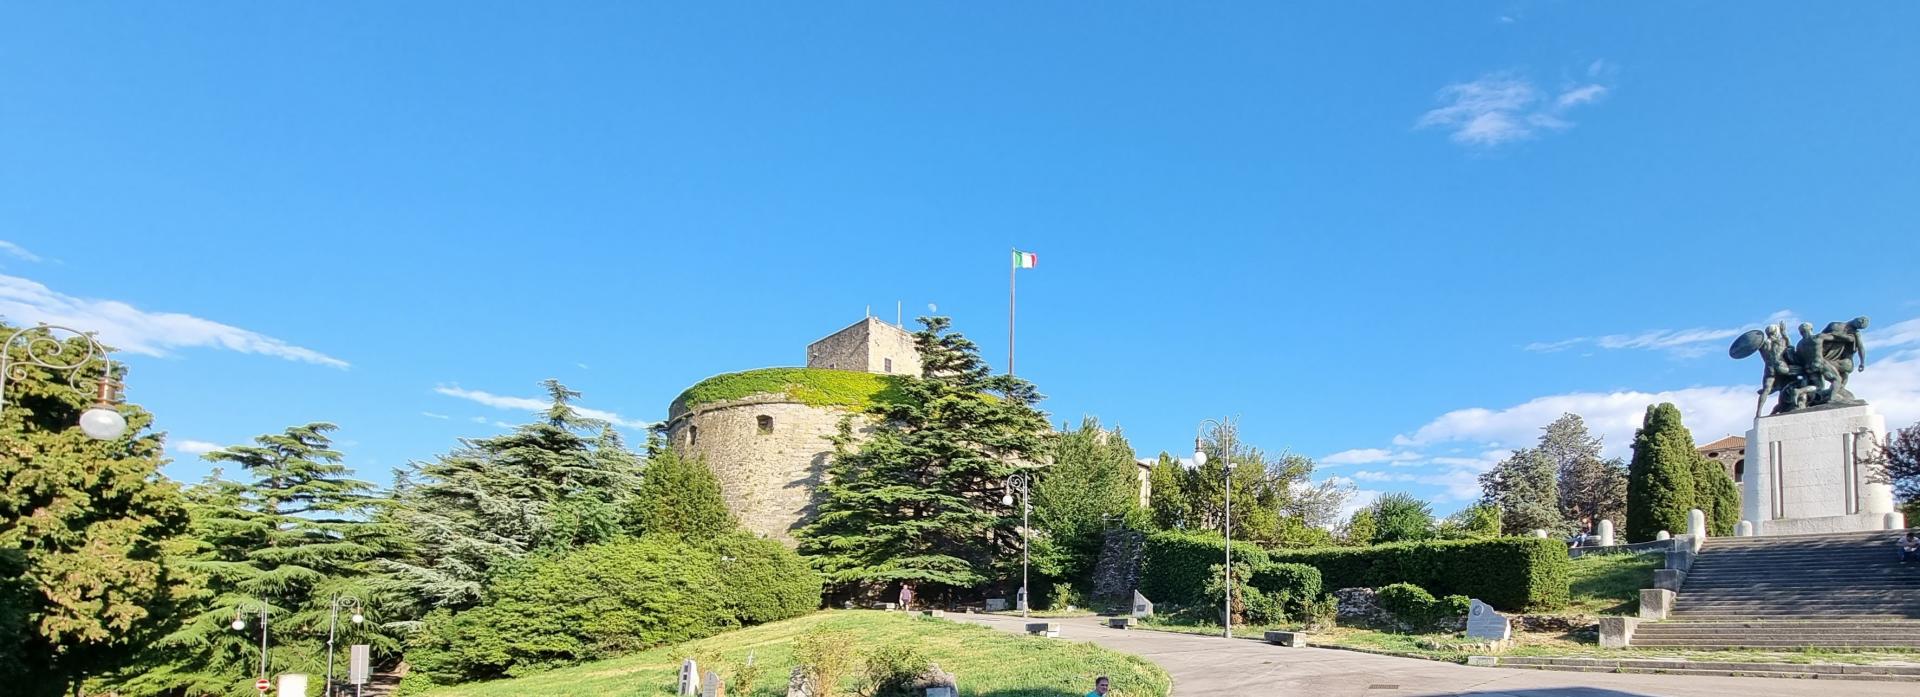 Castello di San Giusto Image